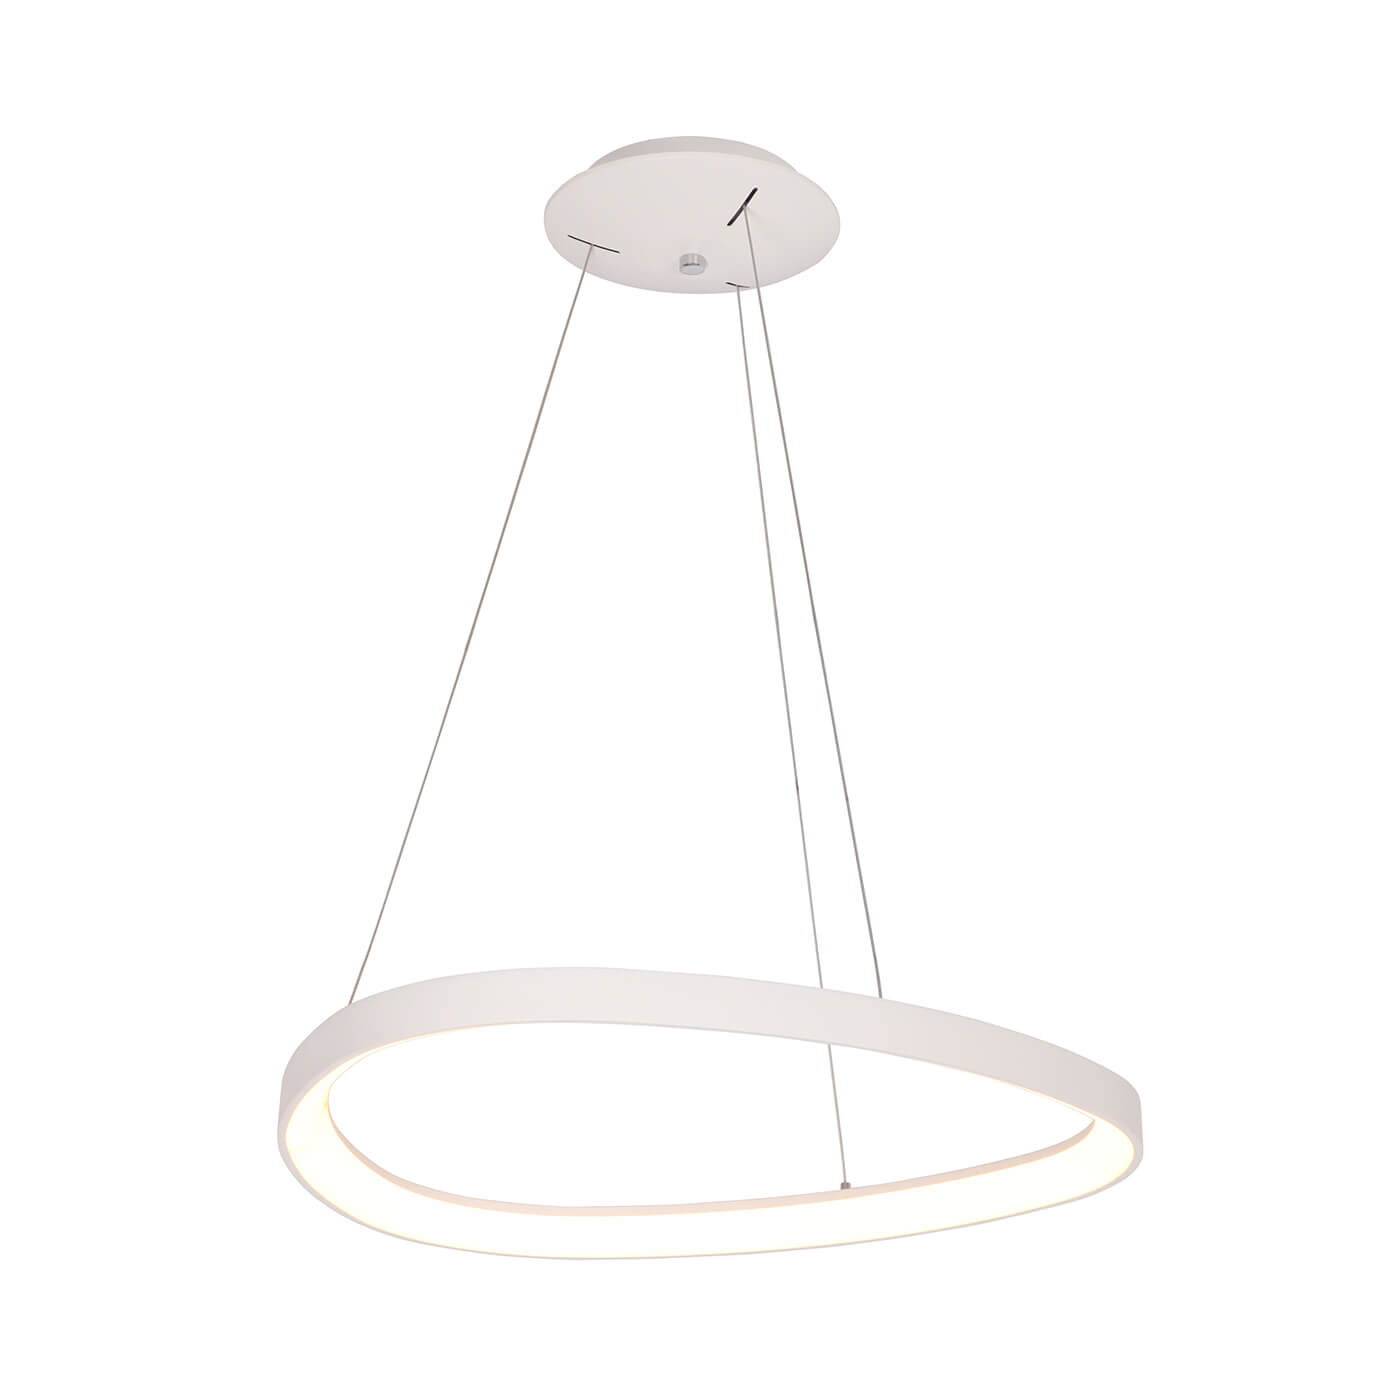 Cauti o lampa suspendata alba ELERI SM cu LED, design modern, minimalist - Corp de iluminat pentru living sau dining din colectia de lustre si candelabre DOMICILIO?